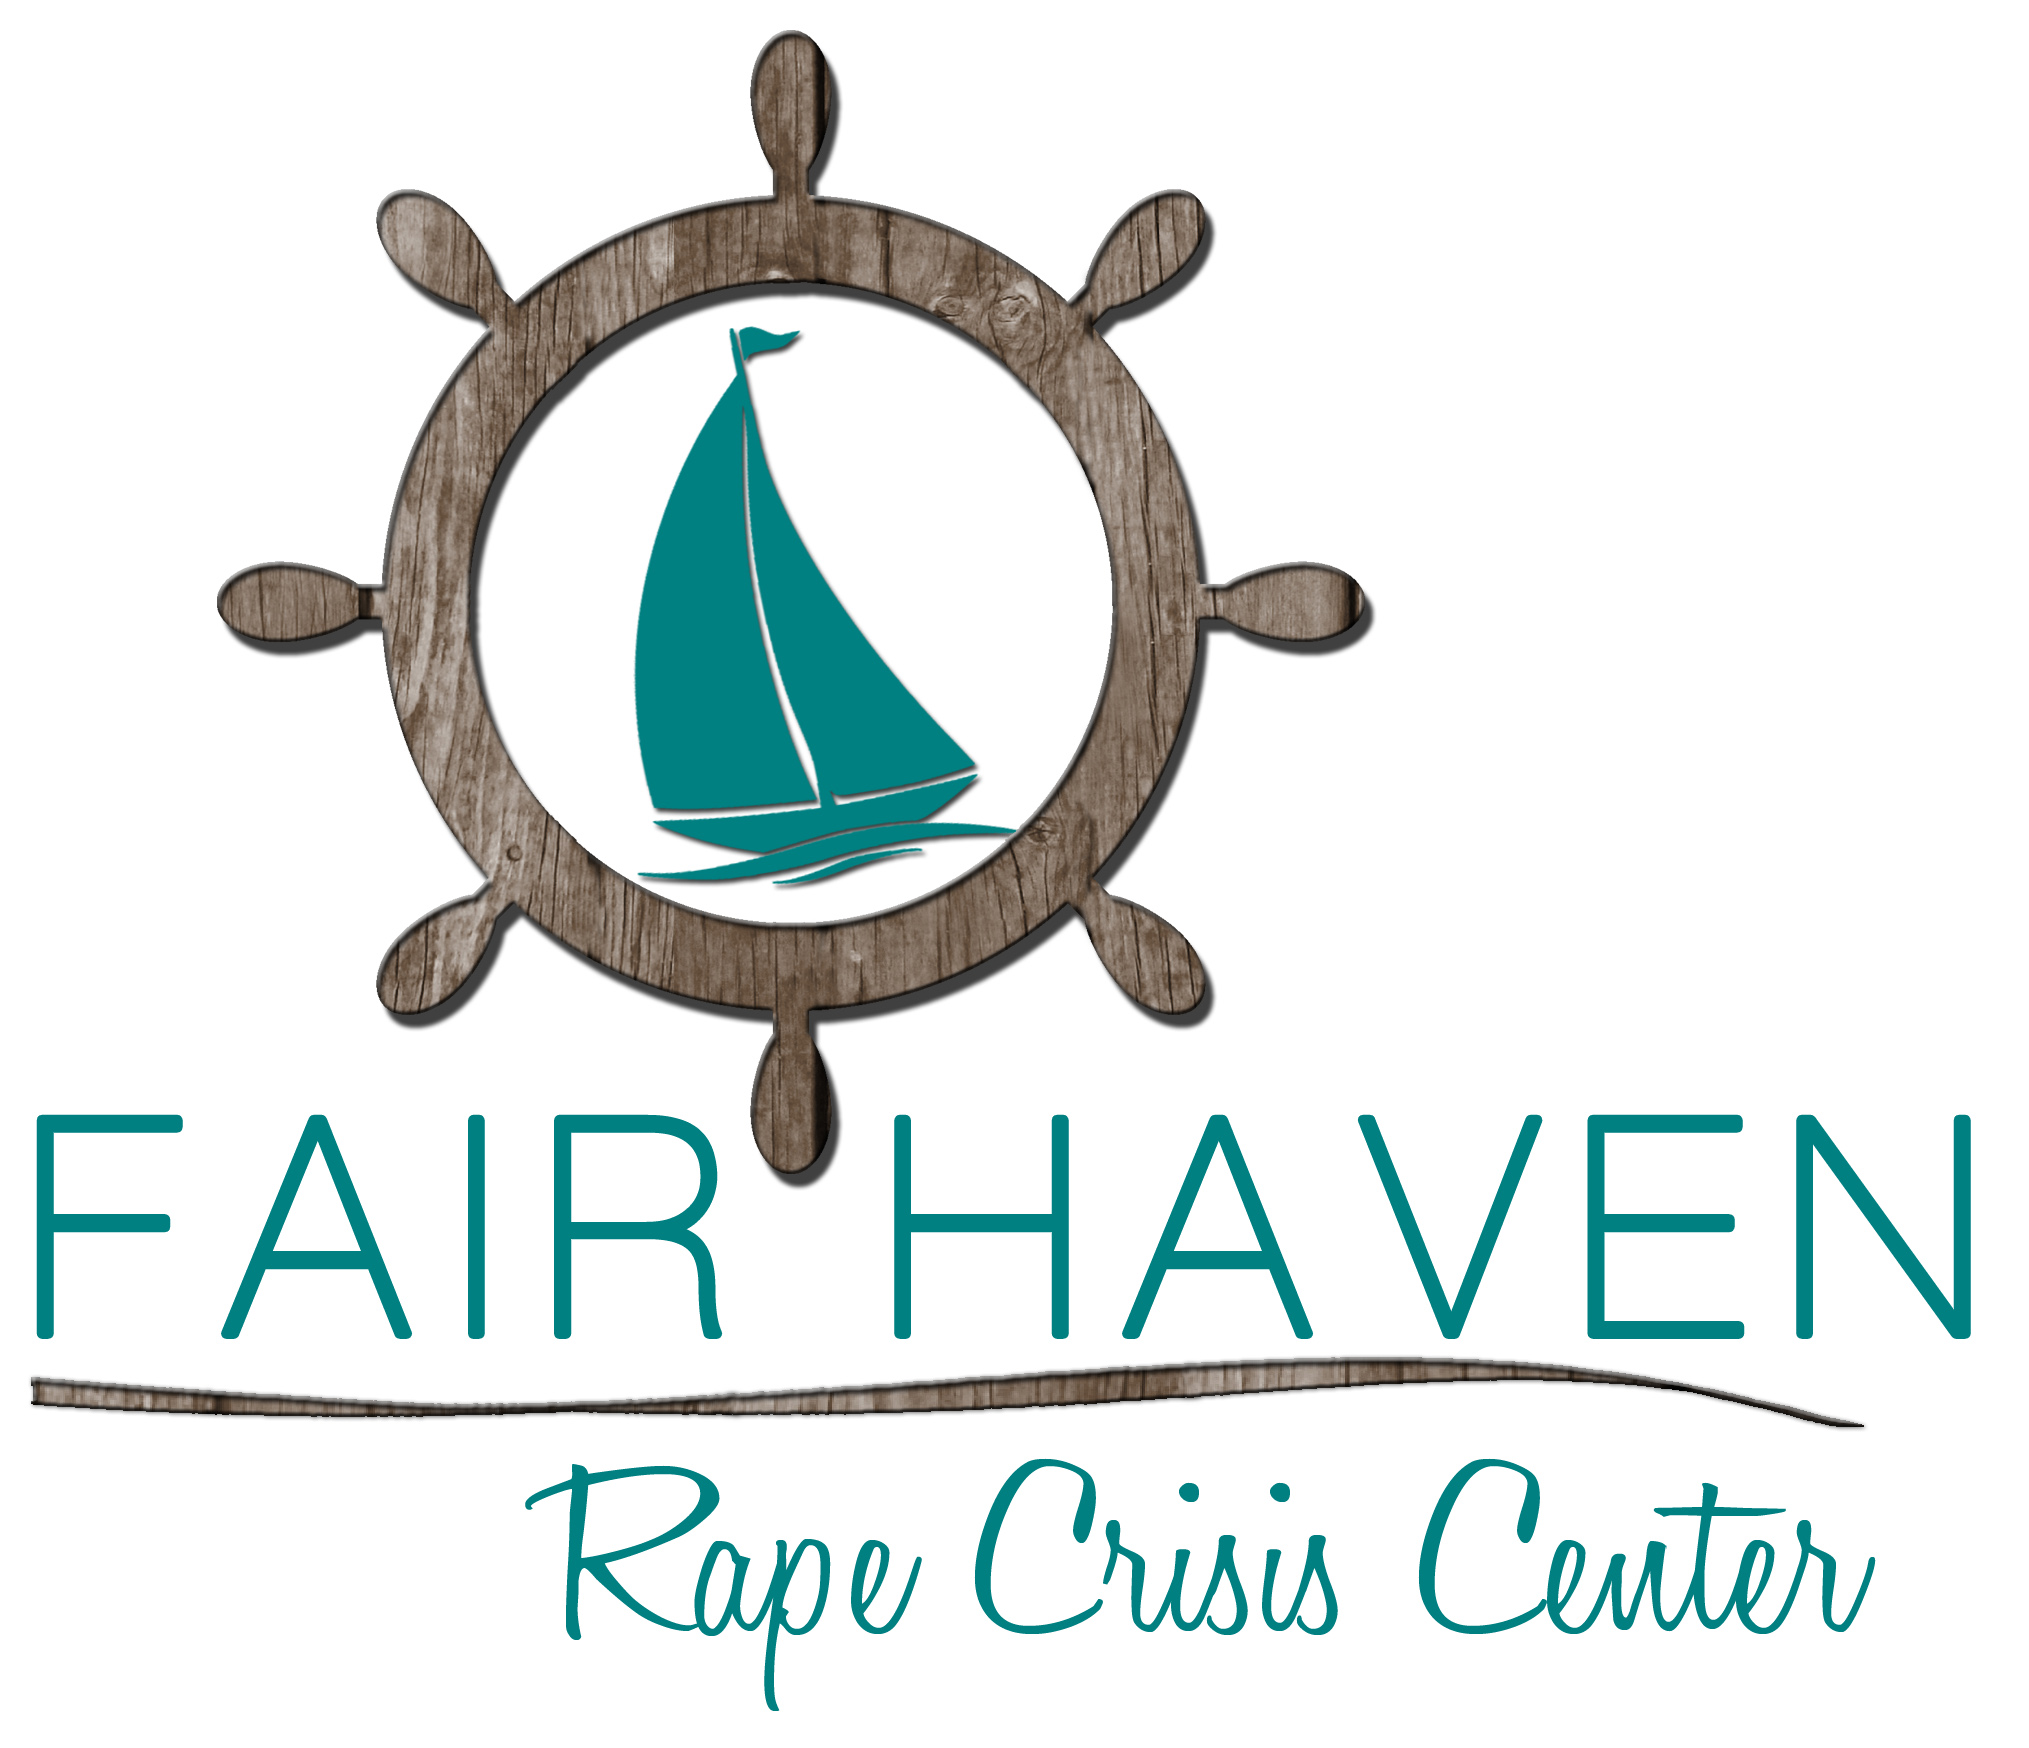 Fair Haven Rape Crisis Center